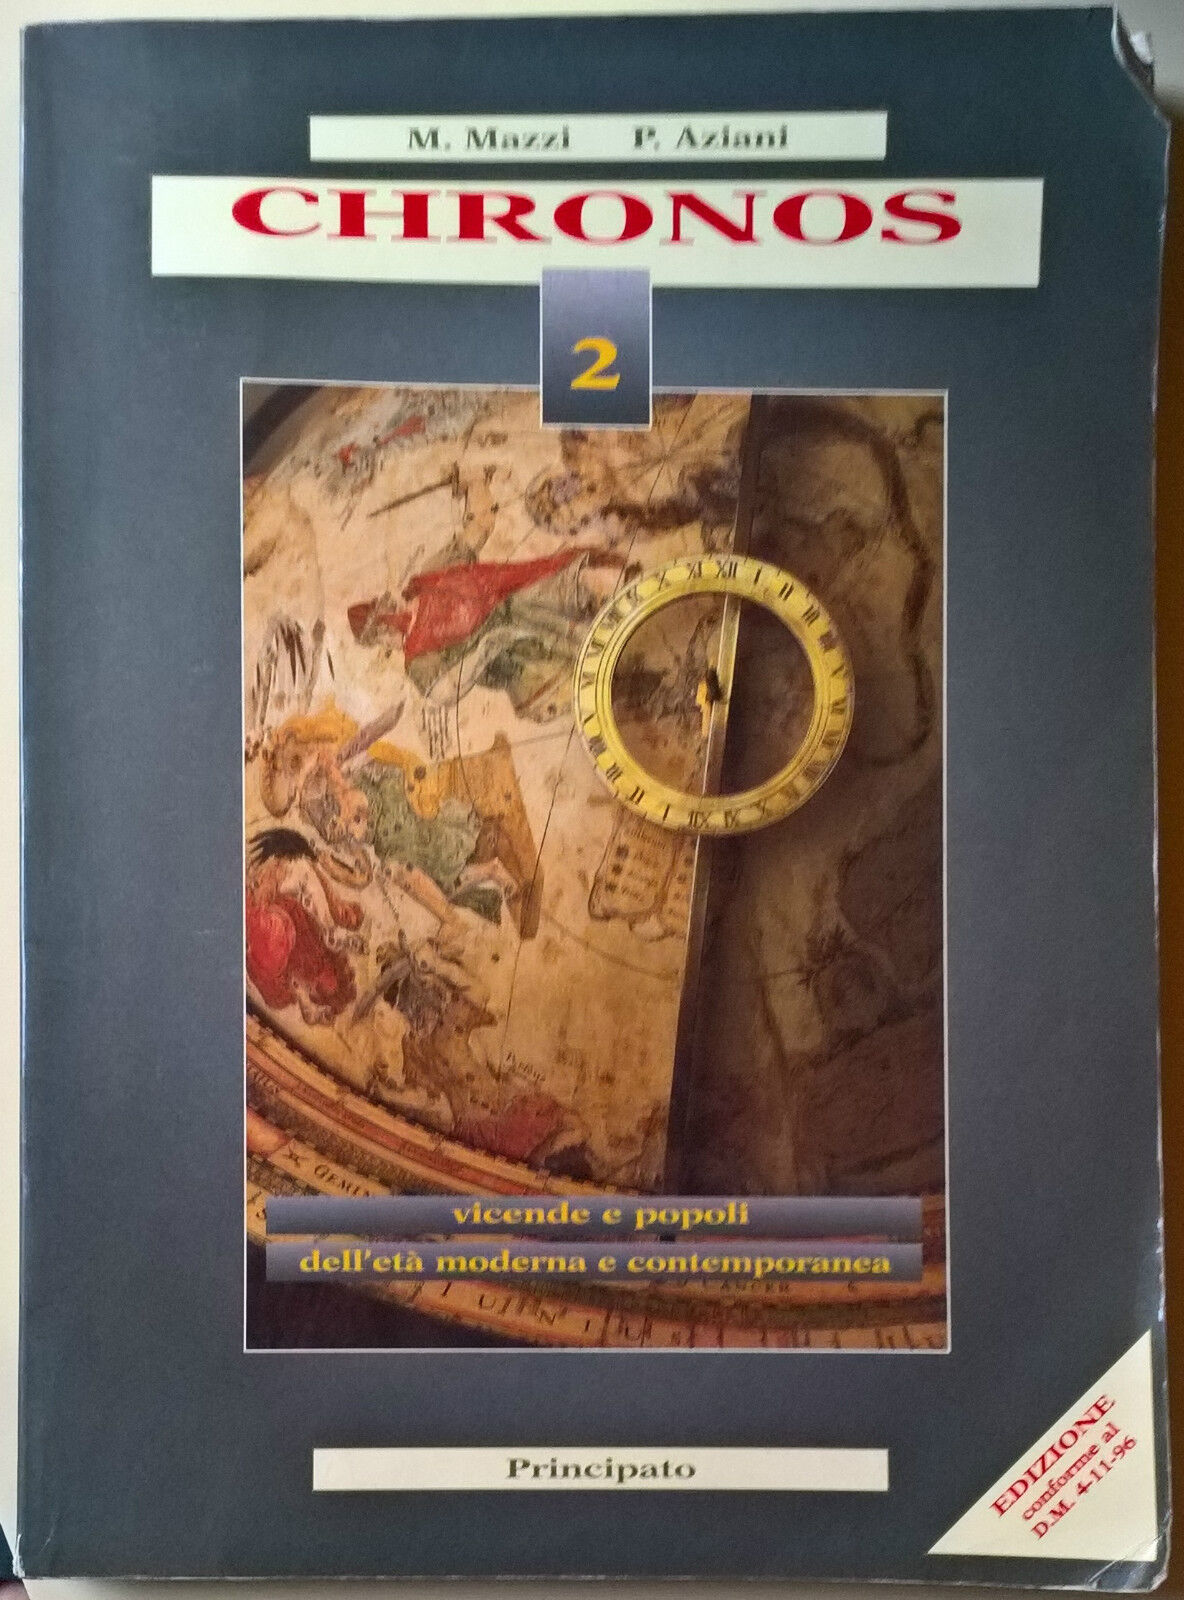 Chronos Vol. 2 - M. Mazzi, P. Aziani - 1997, Principato - L libro usato